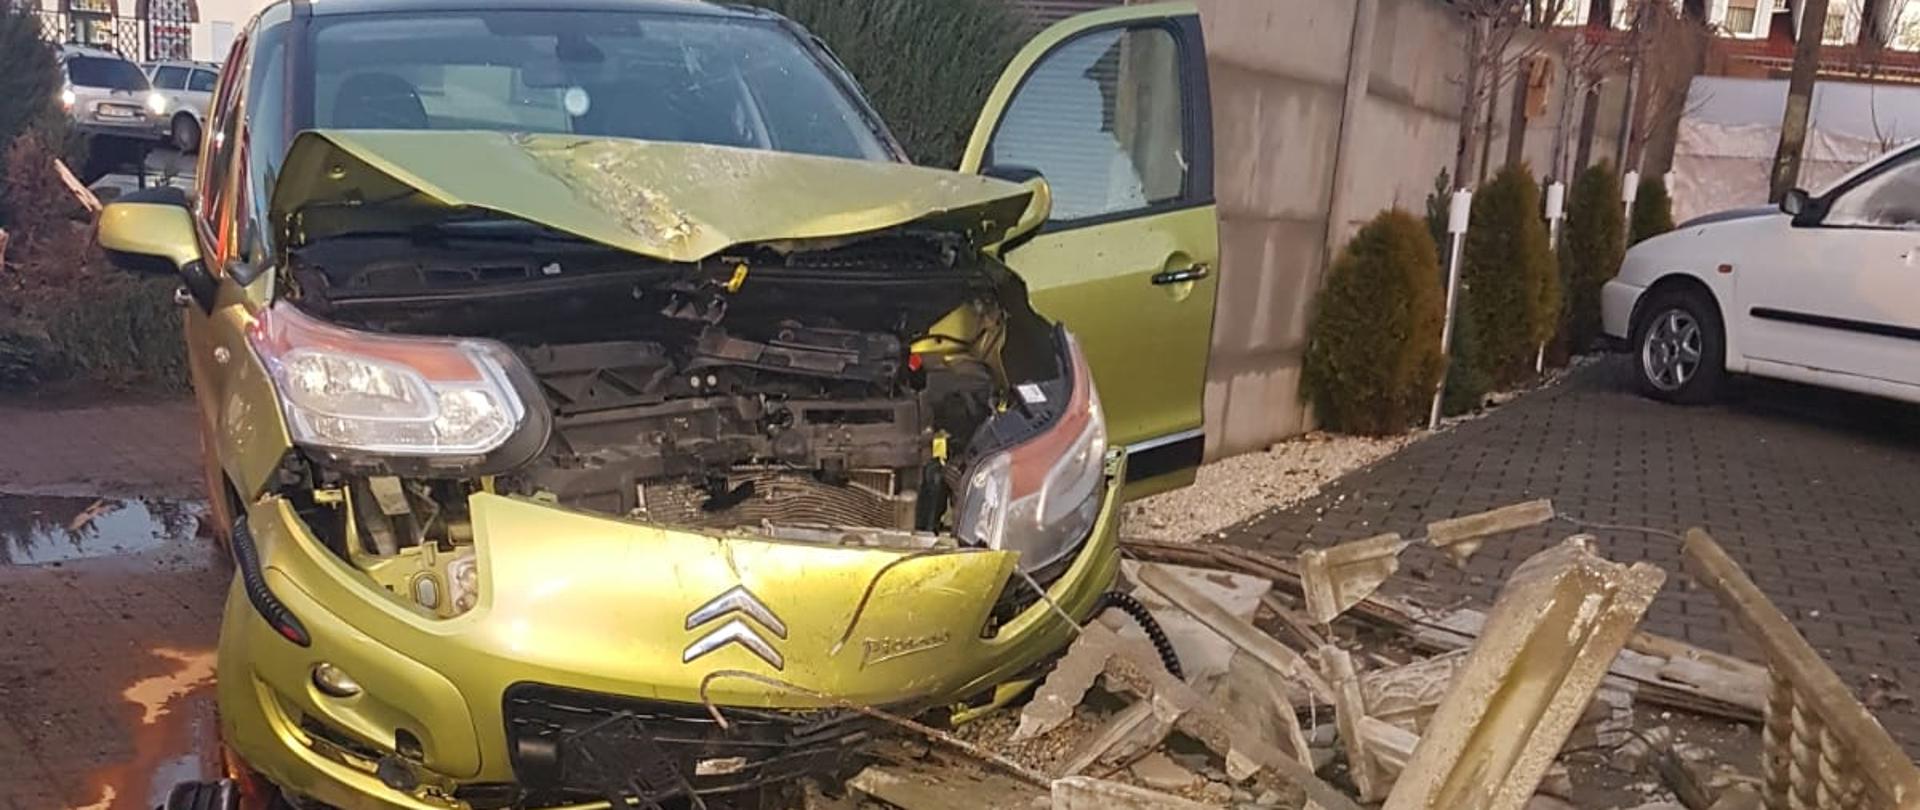 Kierowca samochodu osobowego marki Citroen Picasso wpadł w poślizg i uderzył w betonowy płot zbudowany z przęseł. Wokół samochodu znajdują się wycieki płynów eksploatacyjnych zabezpieczone sorbentem.